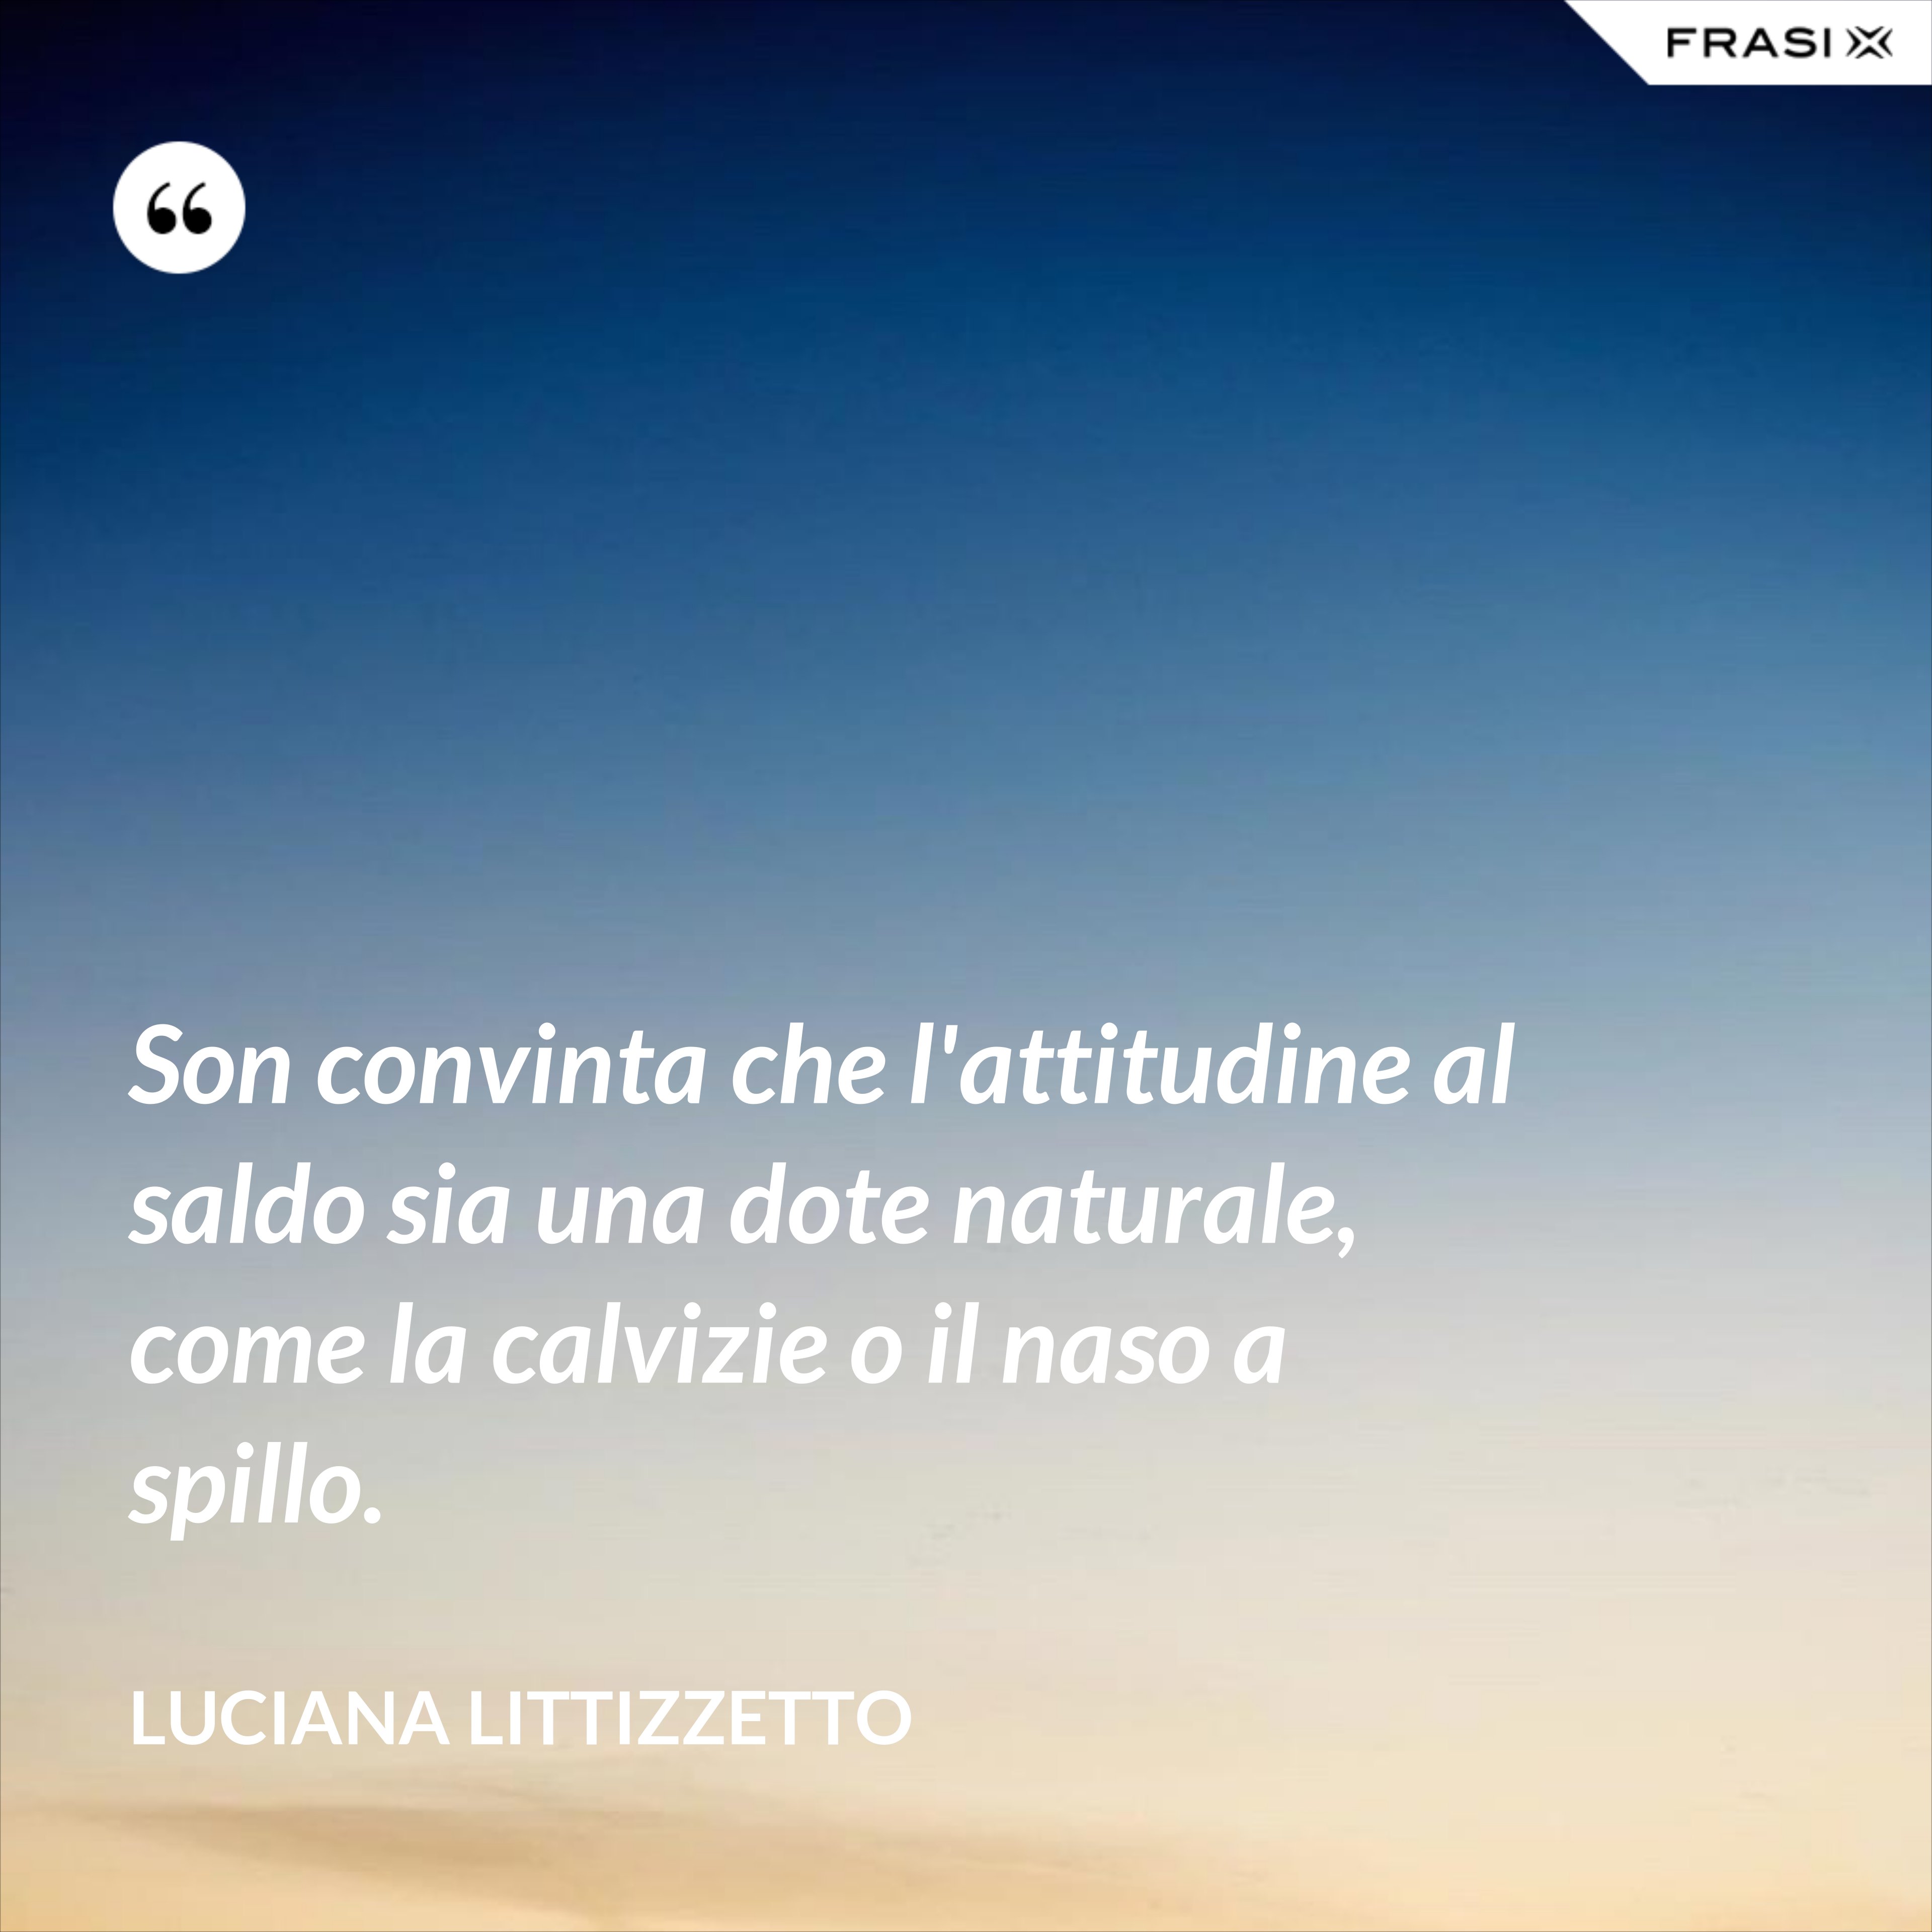 Son convinta che l'attitudine al saldo sia una dote naturale, come la calvizie o il naso a spillo. - Luciana Littizzetto